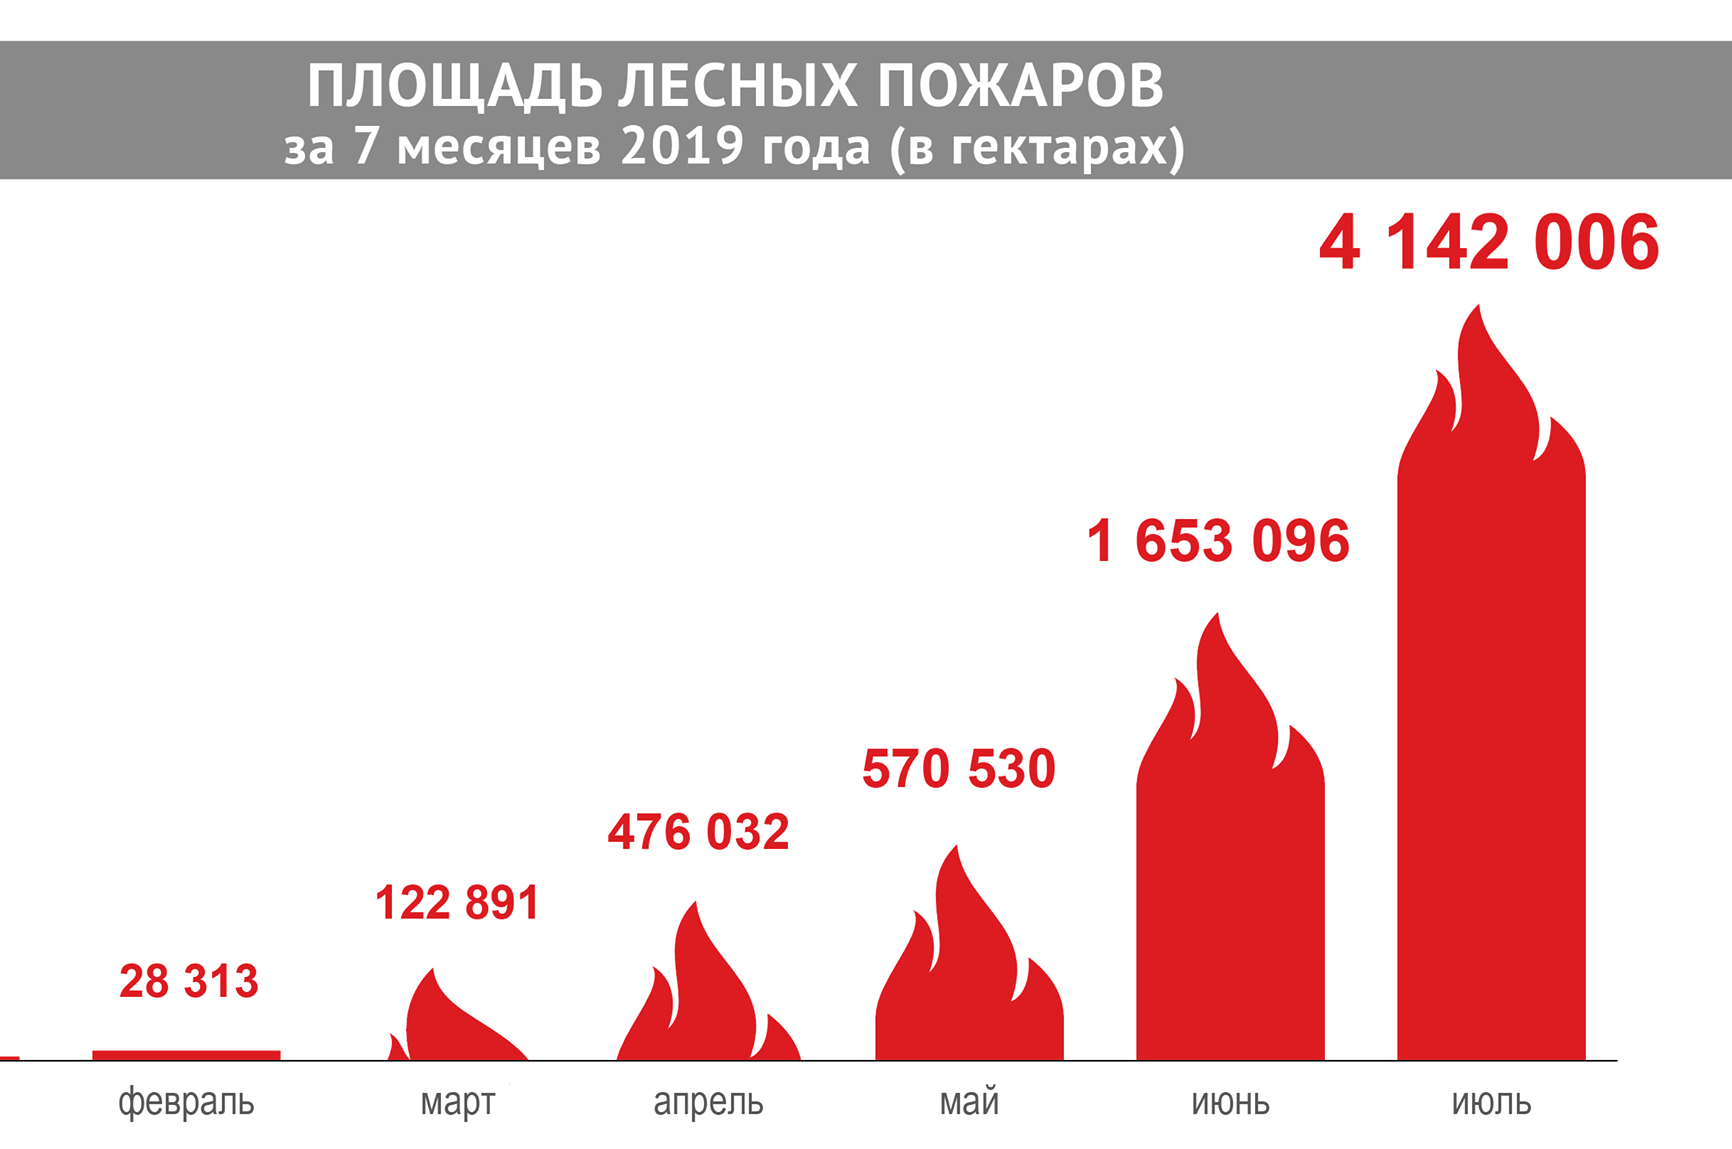 Количество лесных пожаров в 2021 году в России. Статистика лесных пожаров в России за последние 5 лет 2020. Статистика природных пожаров в России за последние 5 лет. Динамика лесных пожаров в России с 2010 по 2020.